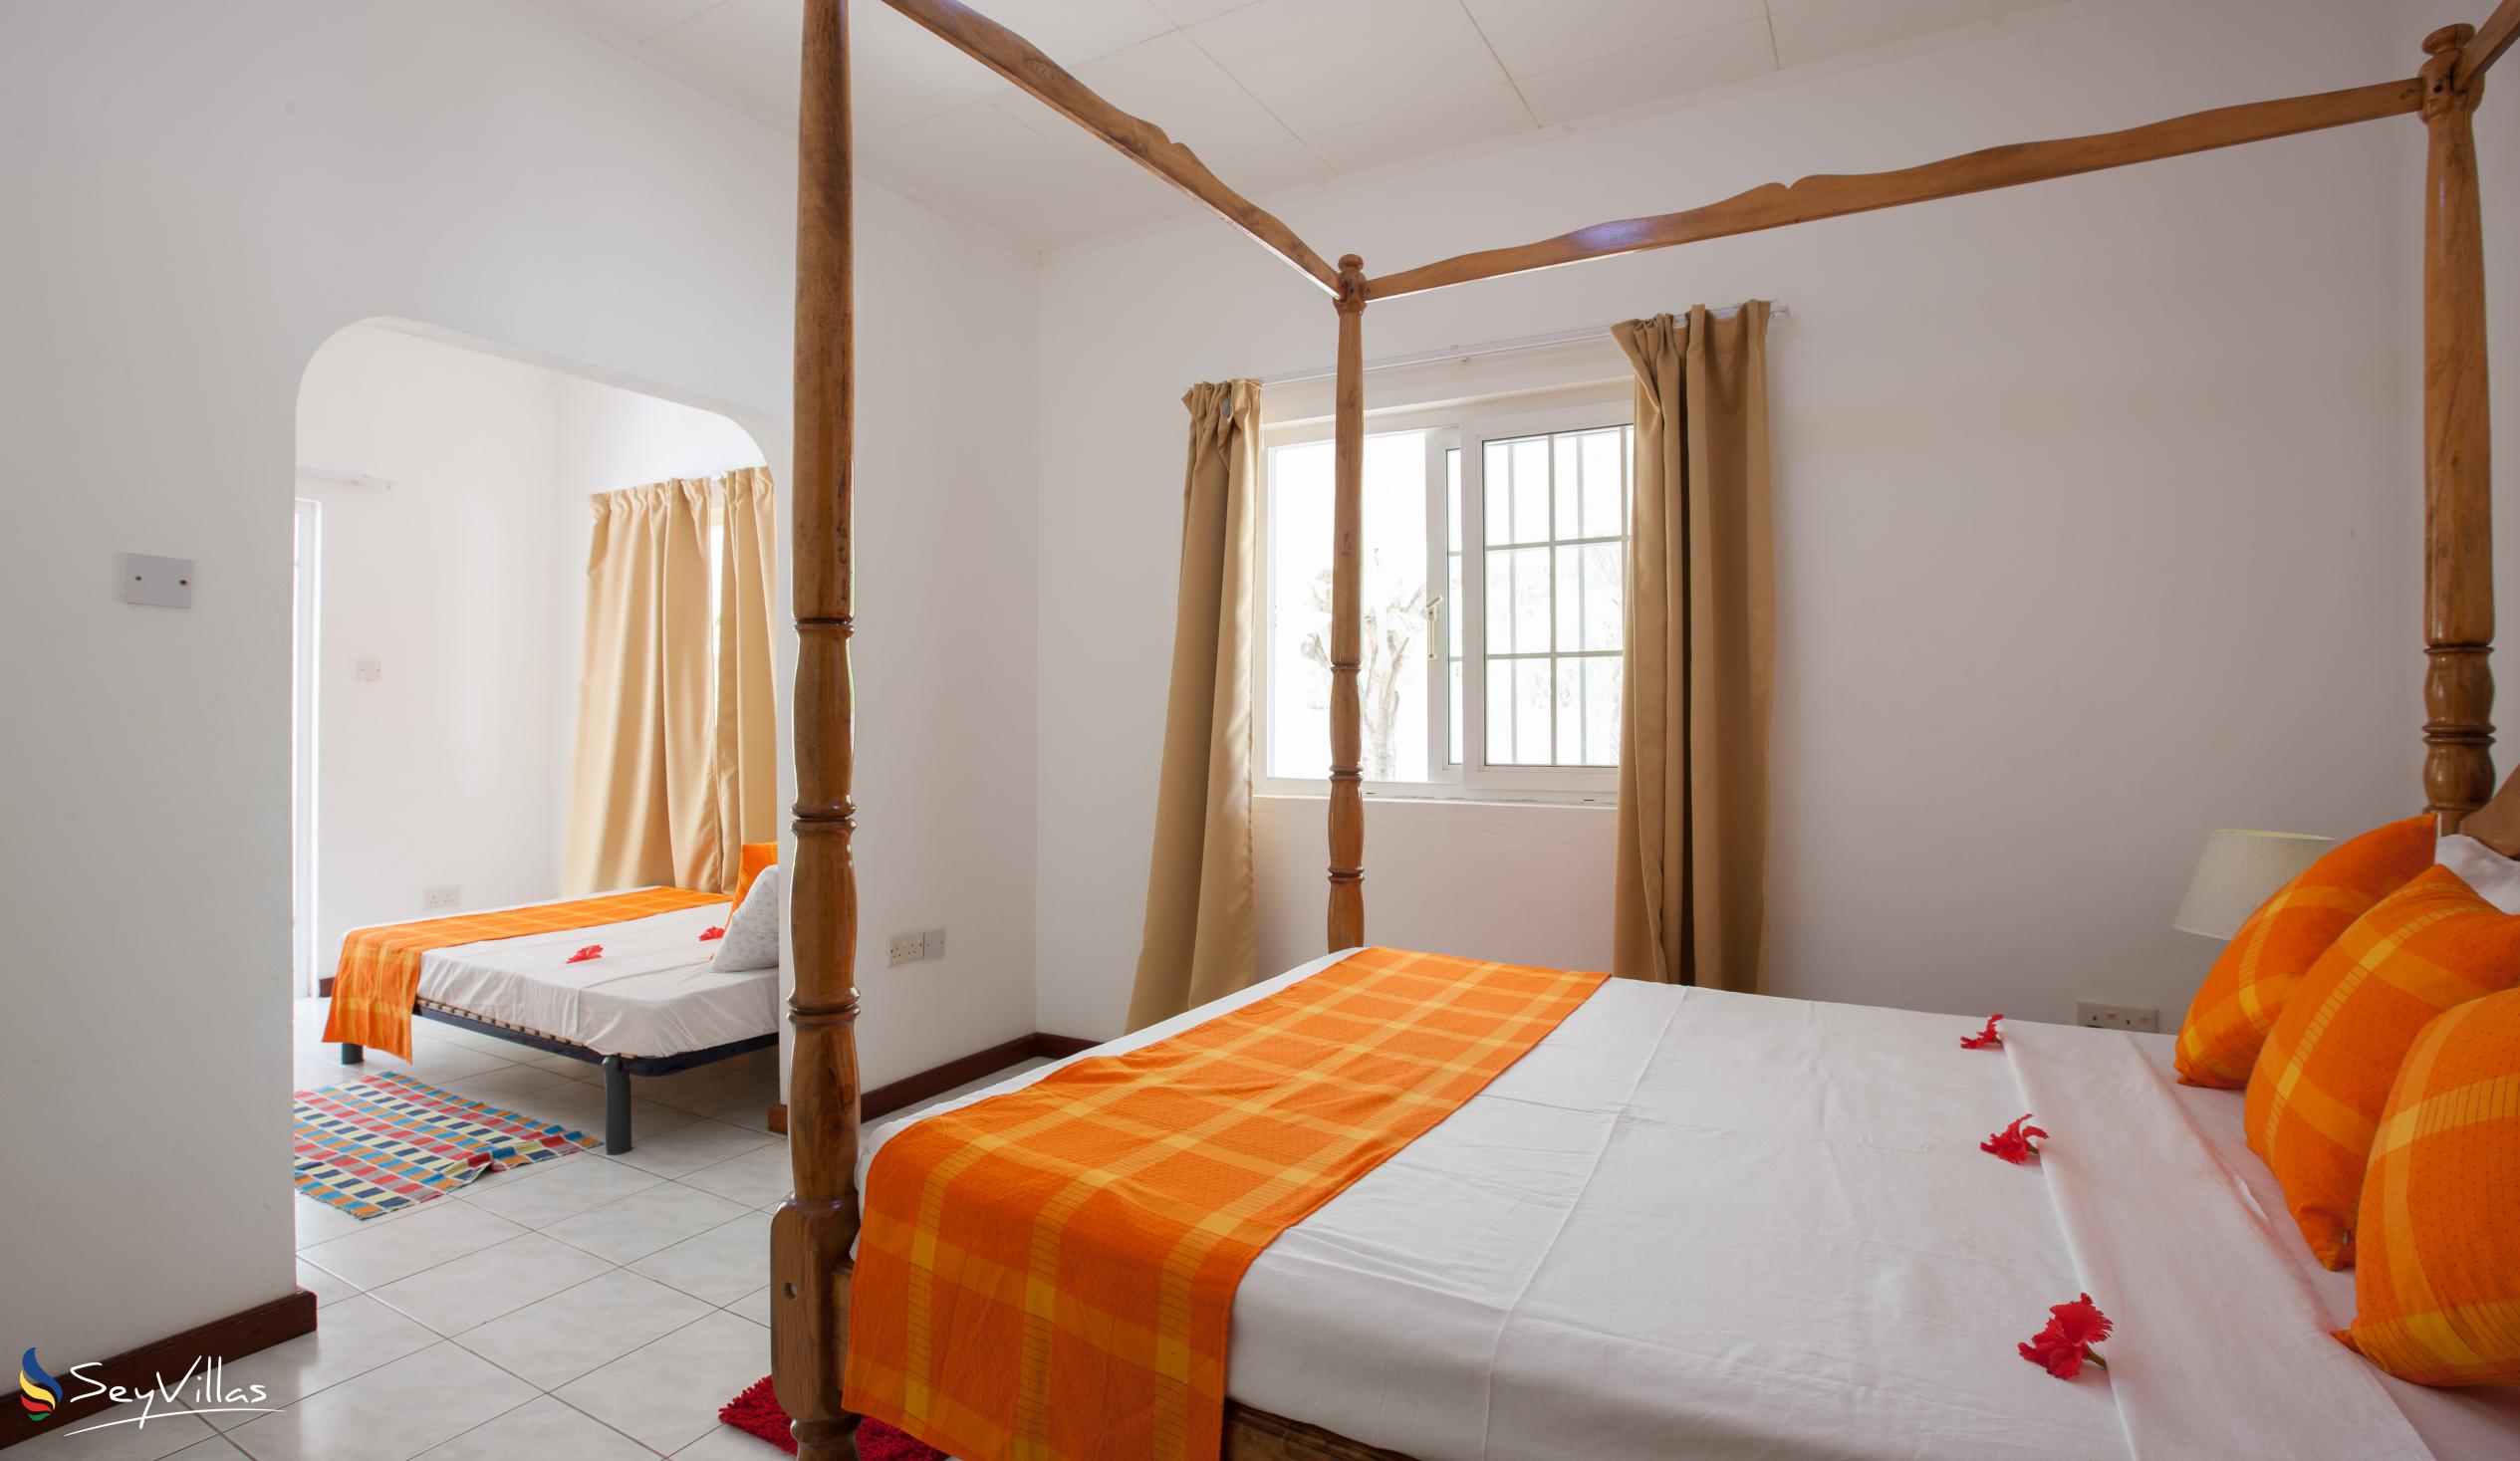 Photo 42: Villa Confort - Family Room 1 - Praslin (Seychelles)